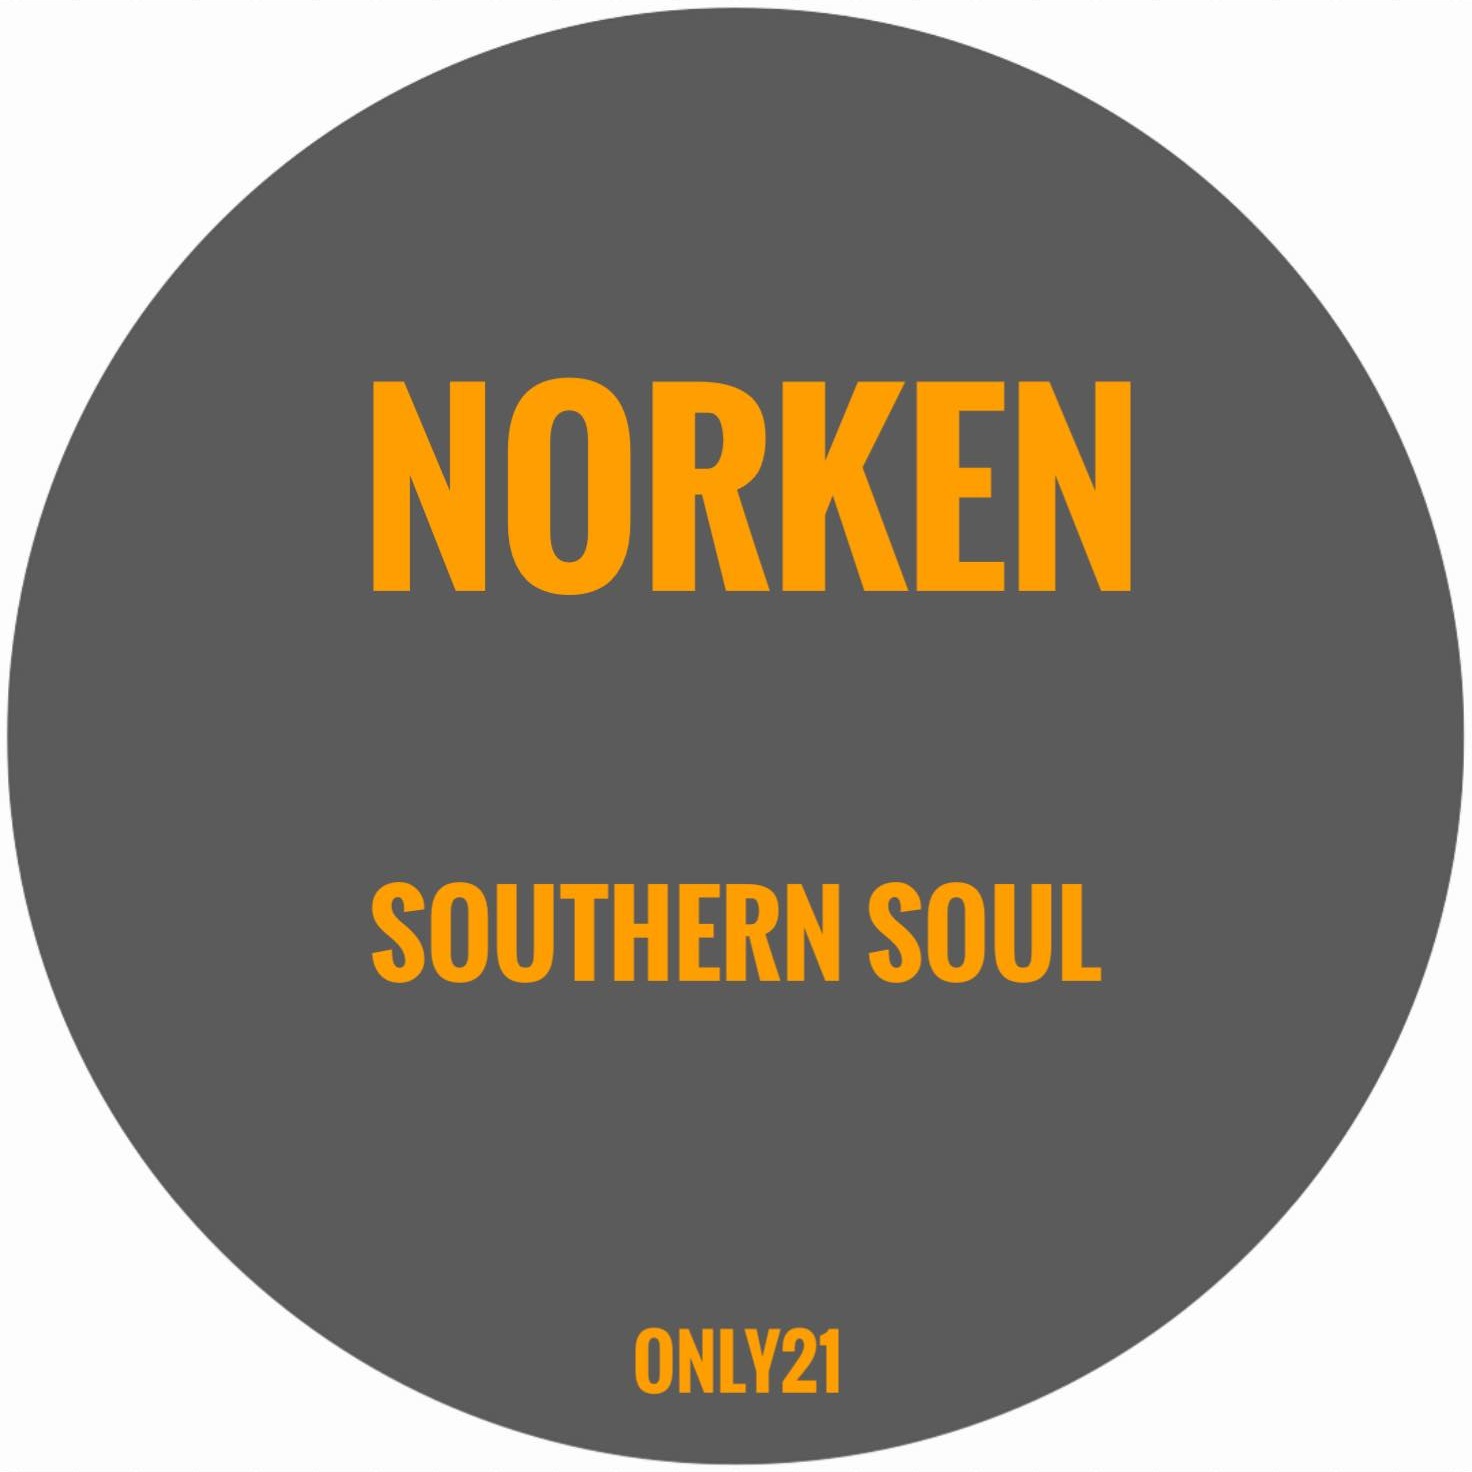 Norken - Southern Soul : 12inch